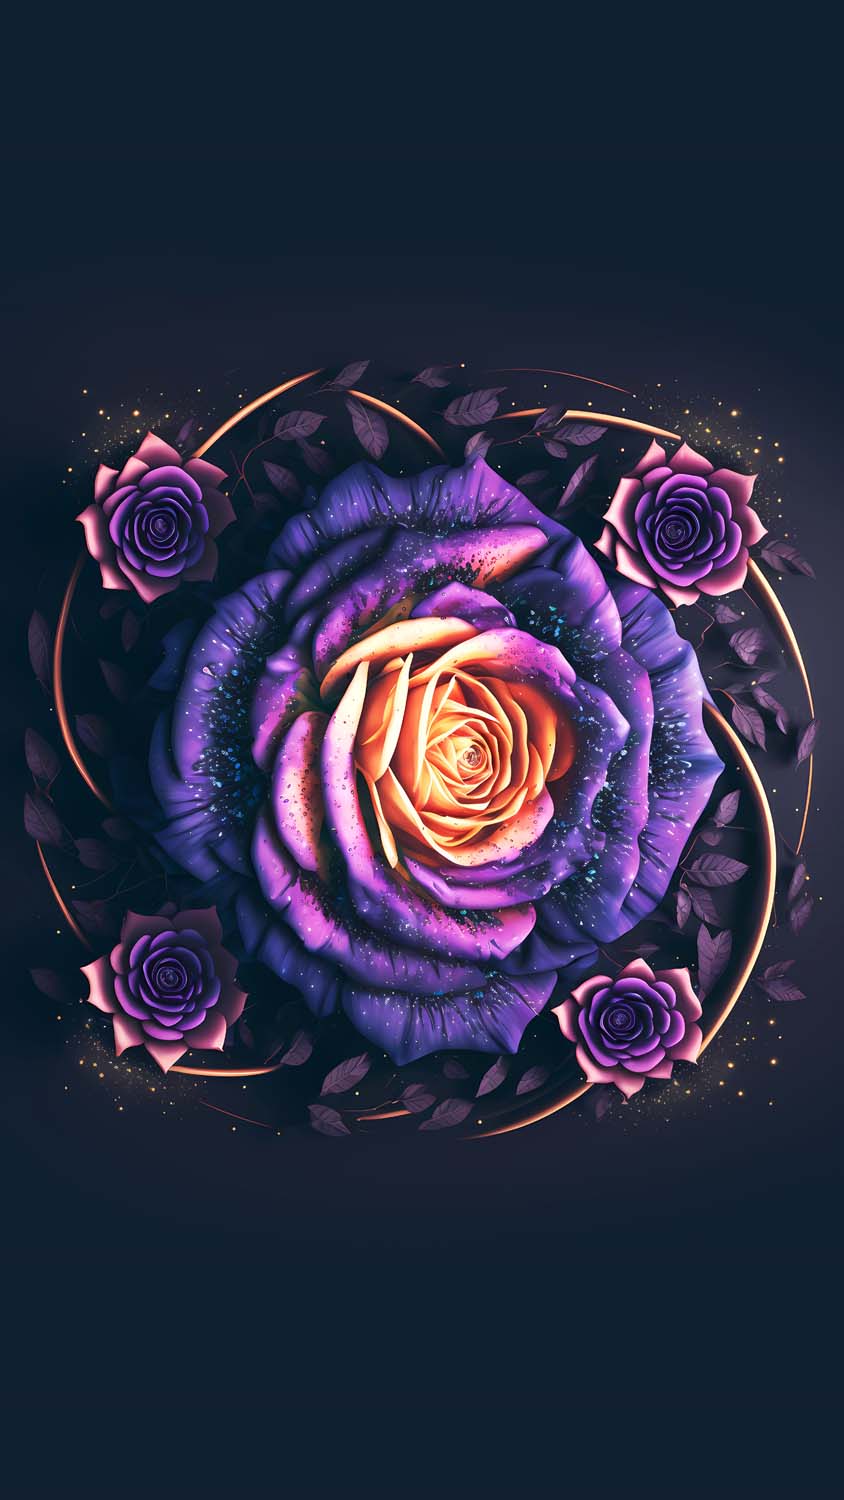 Rose Flower Art IPhone Wallpaper HD - IPhone Wallpapers : iPhone Wallpapers